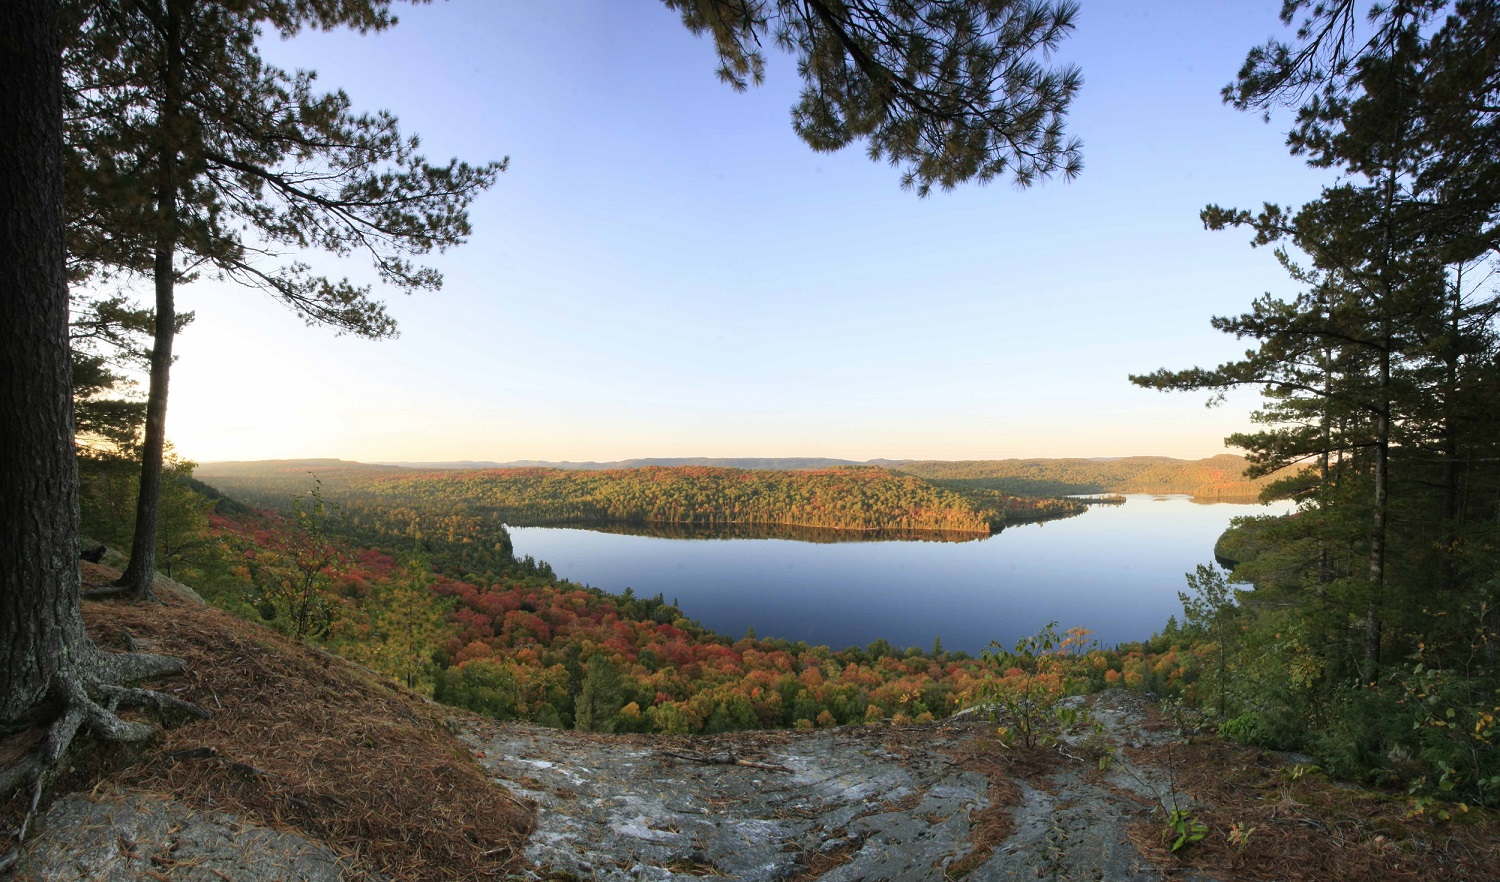 Point de vue en surplomb sur le feuillage d’automne et le lac